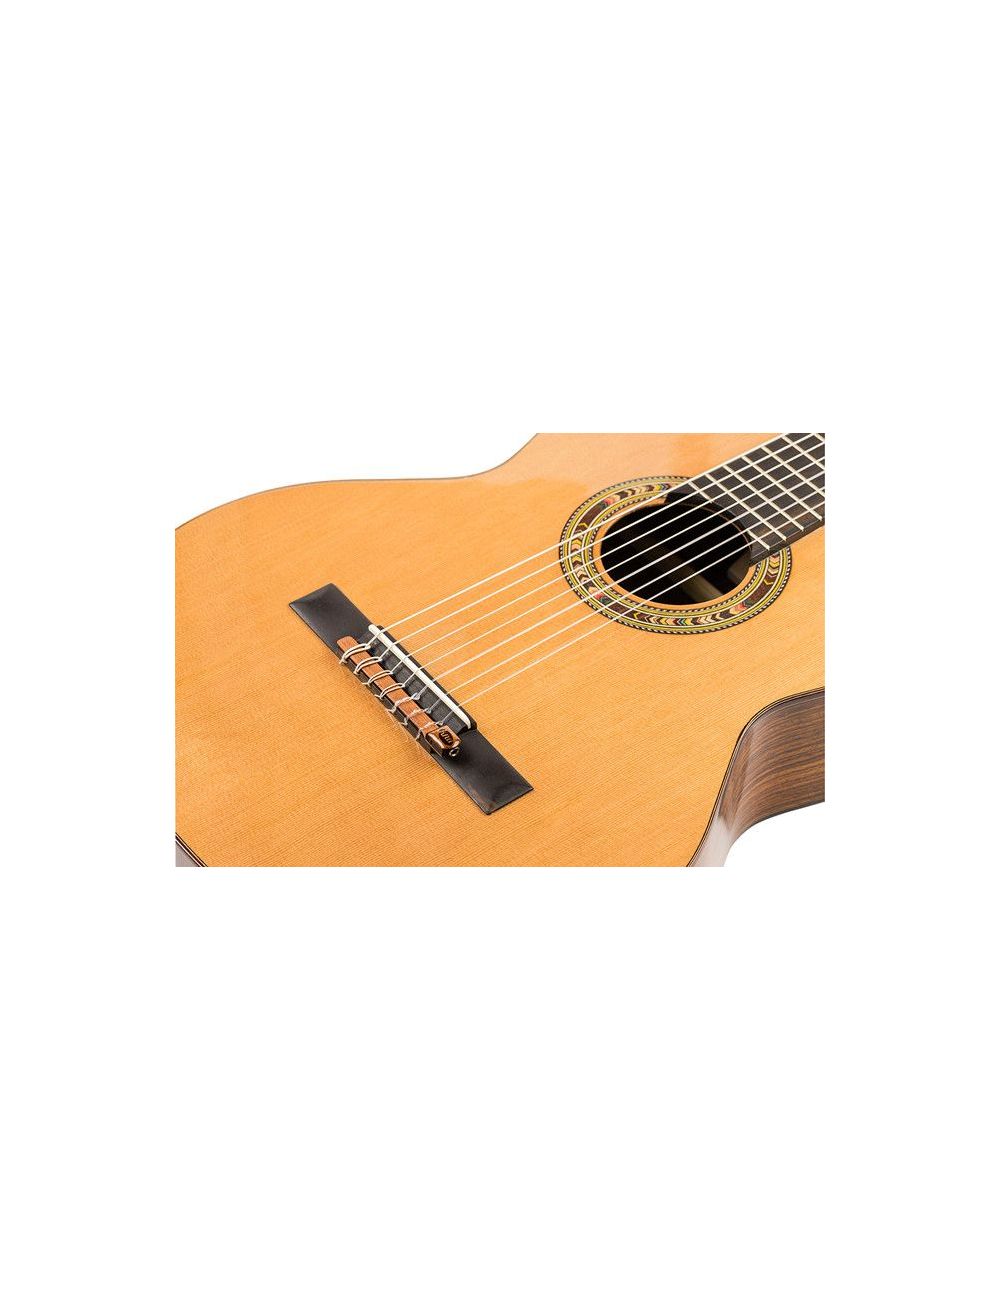 KNA NG-7 S Micro piézo-électrique de Guitare classique 7 cordes